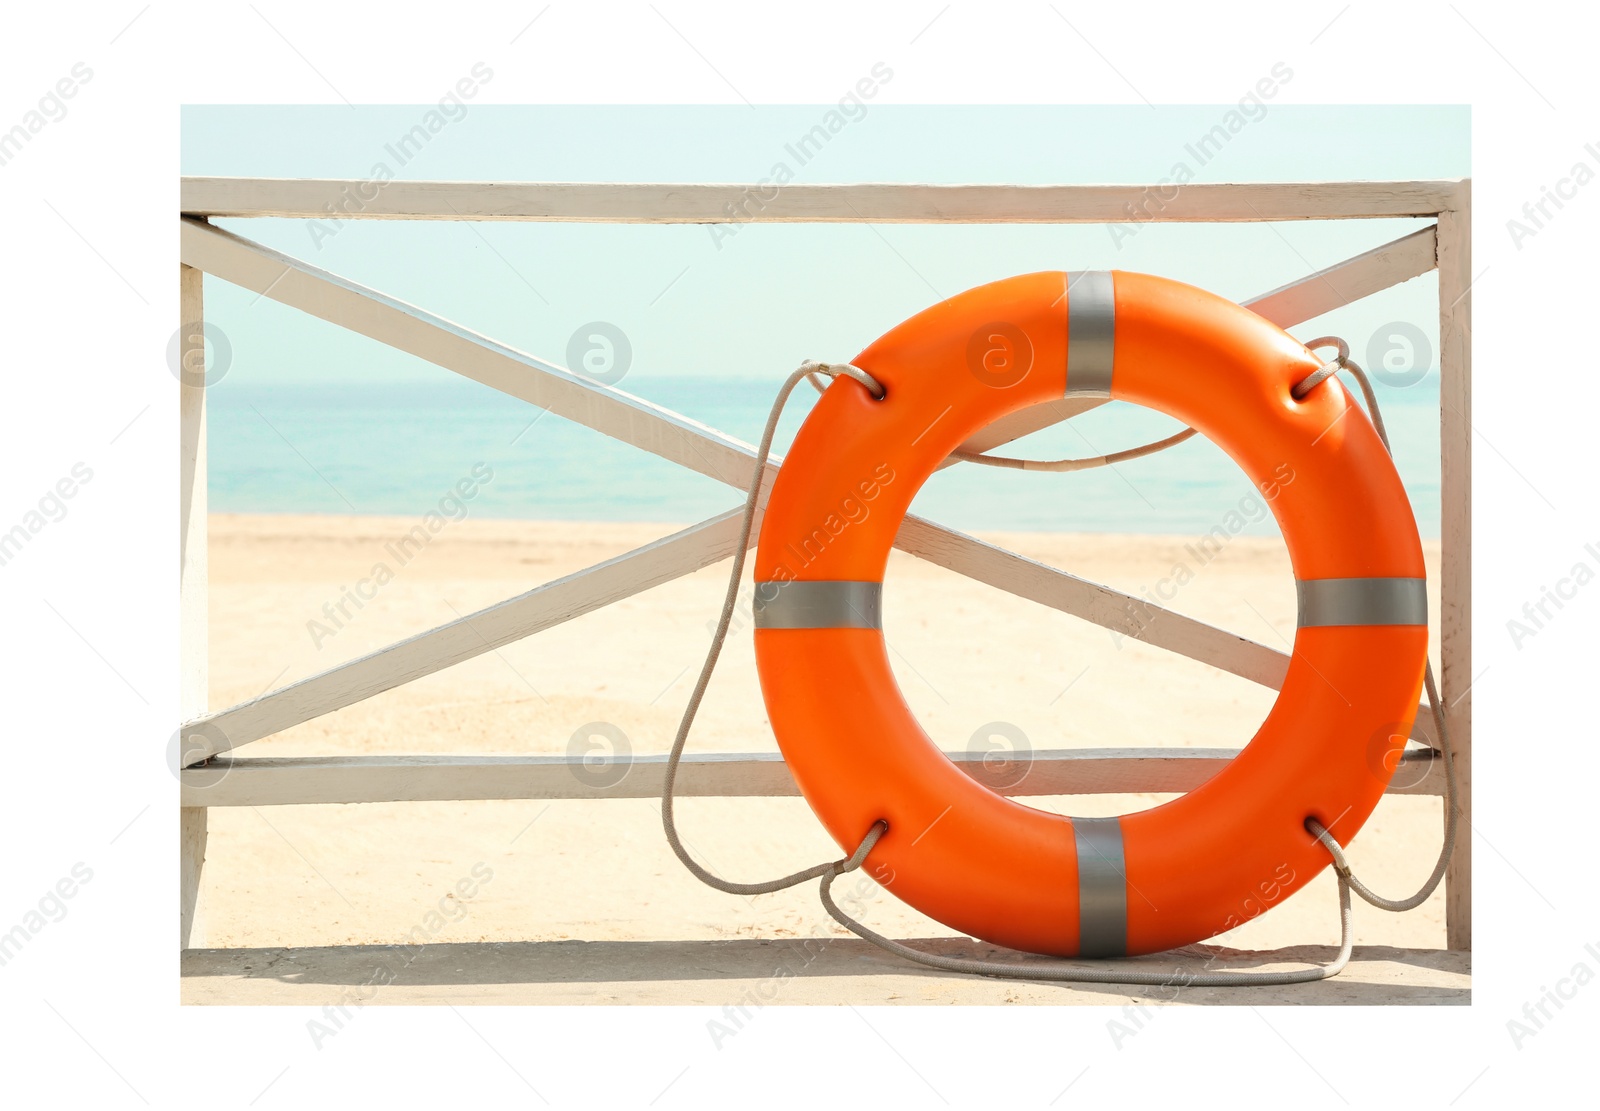 Image of Paper photo. Orange lifebuoy near wooden railing on beach 